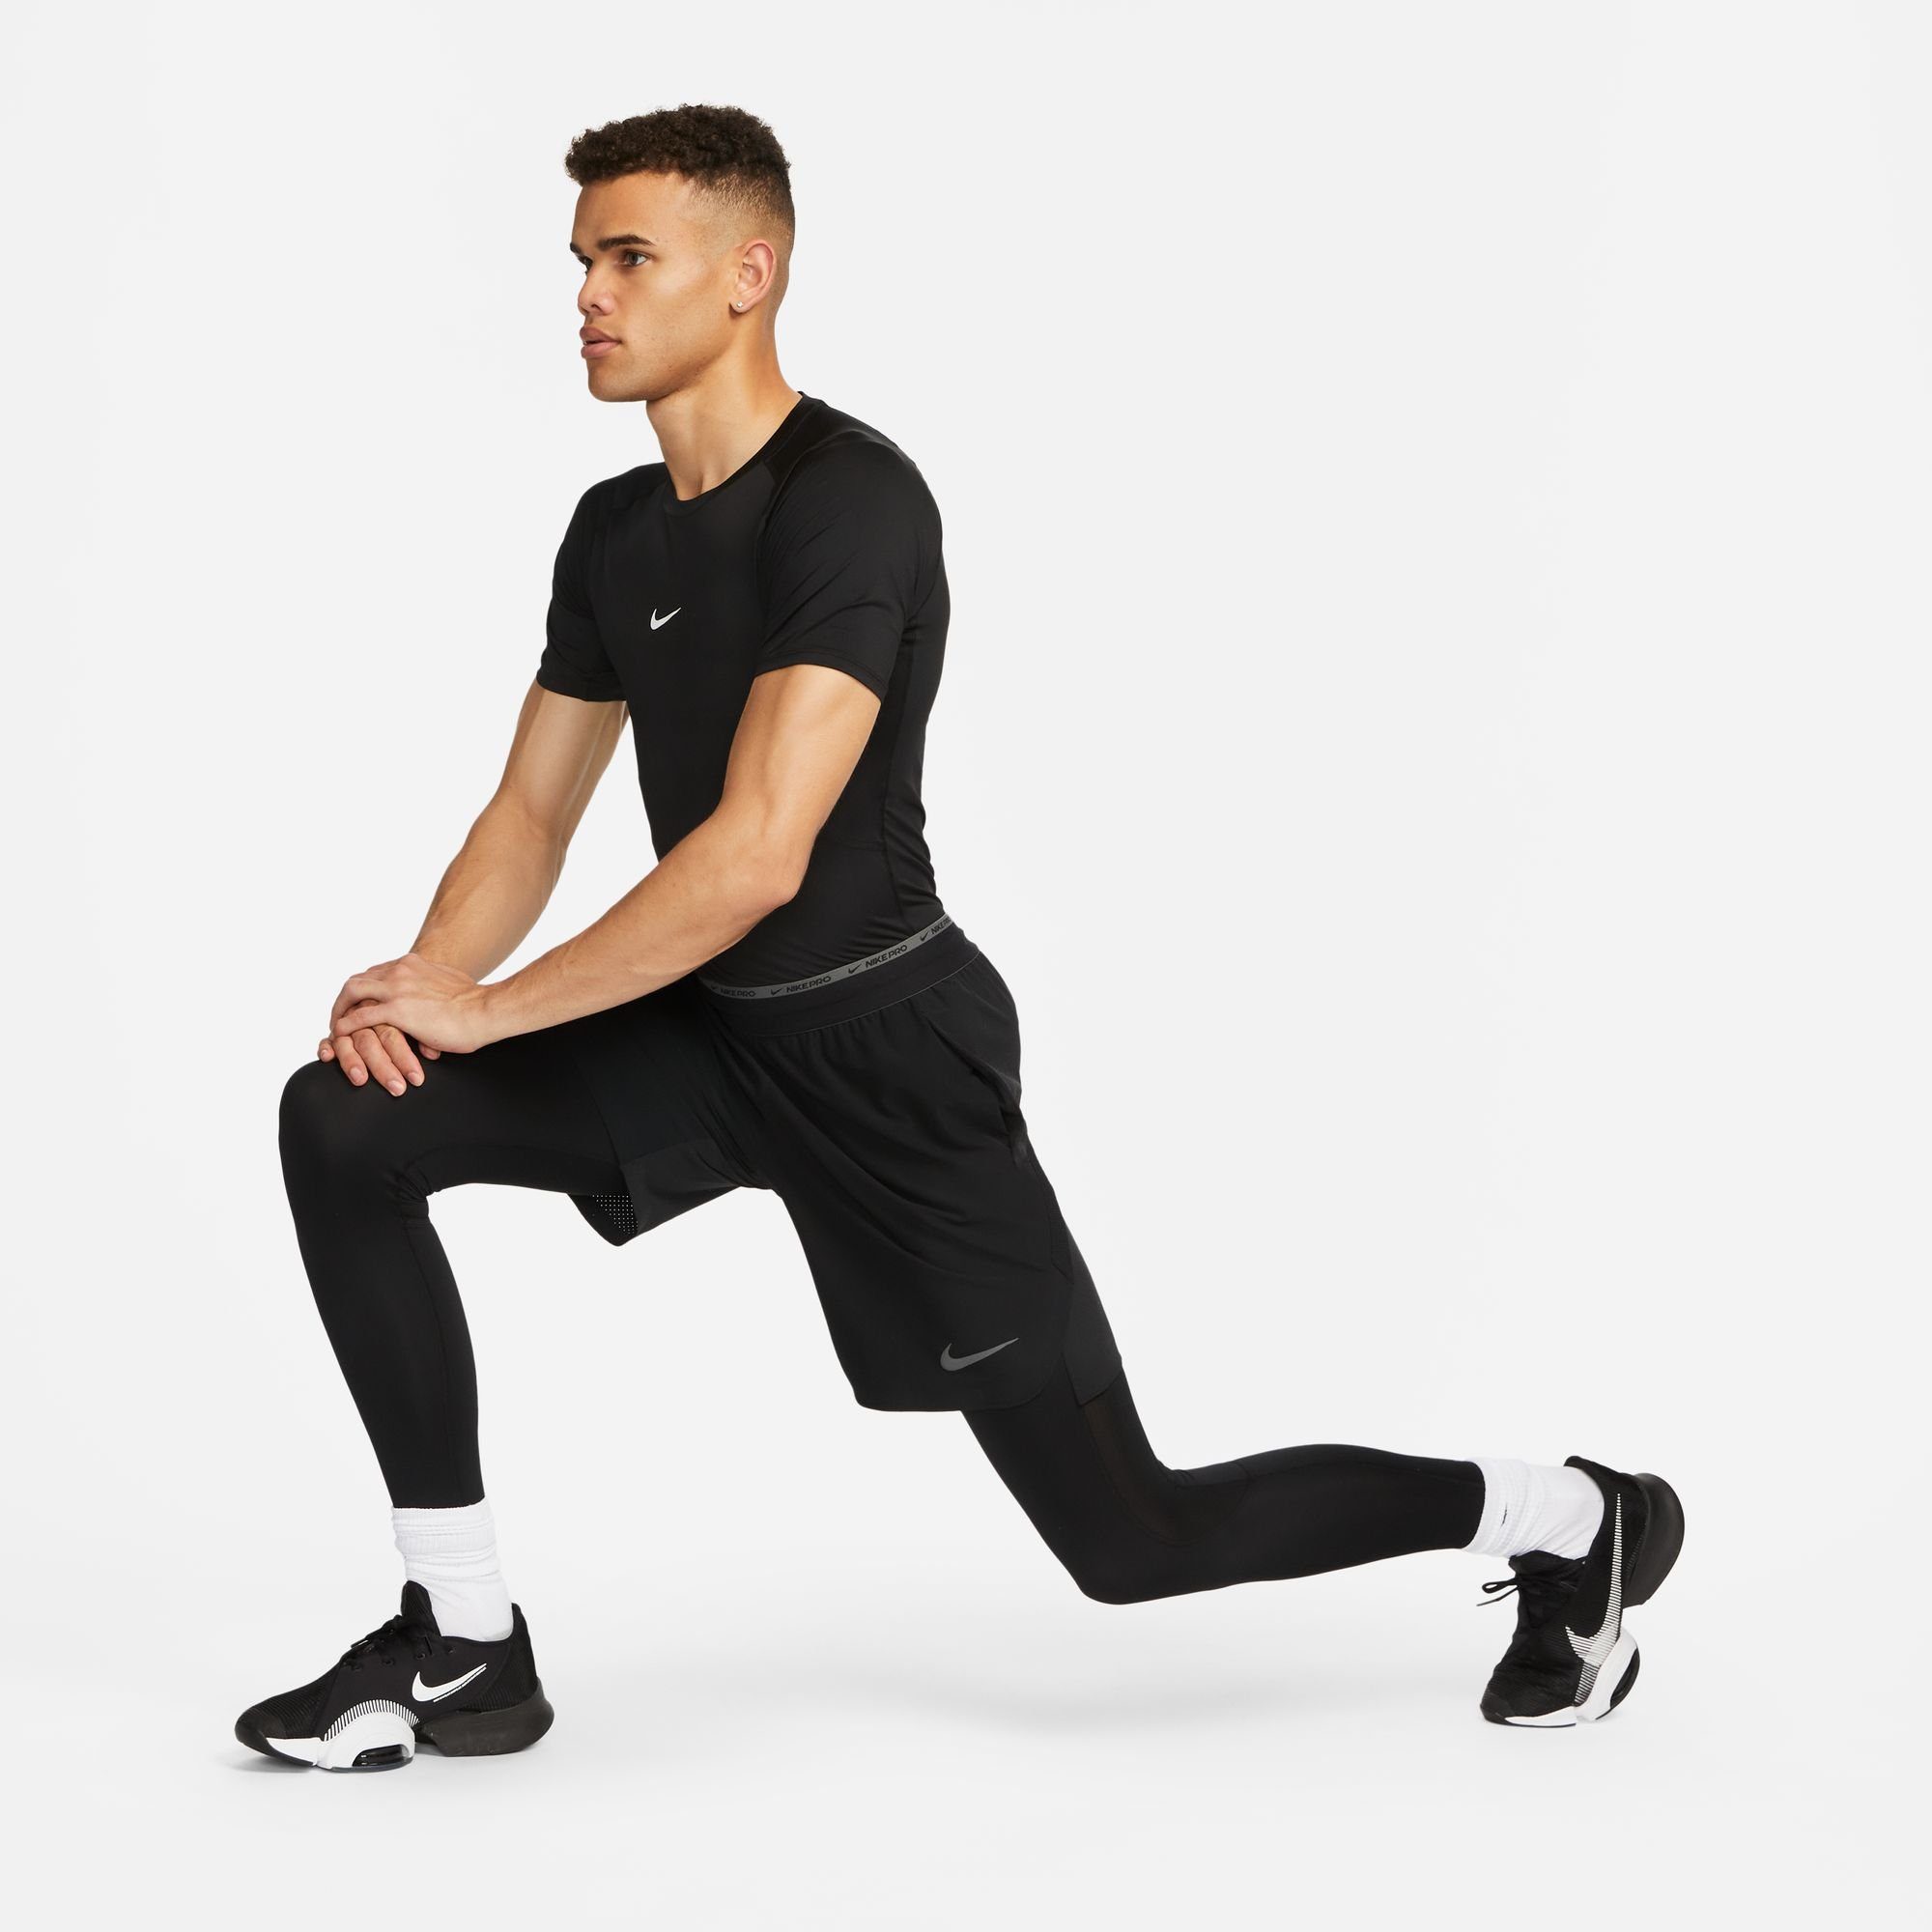 TIGHT Trainingsshirt DRI-FIT SHORT-SLEEVE Nike MEN'S PRO TOP